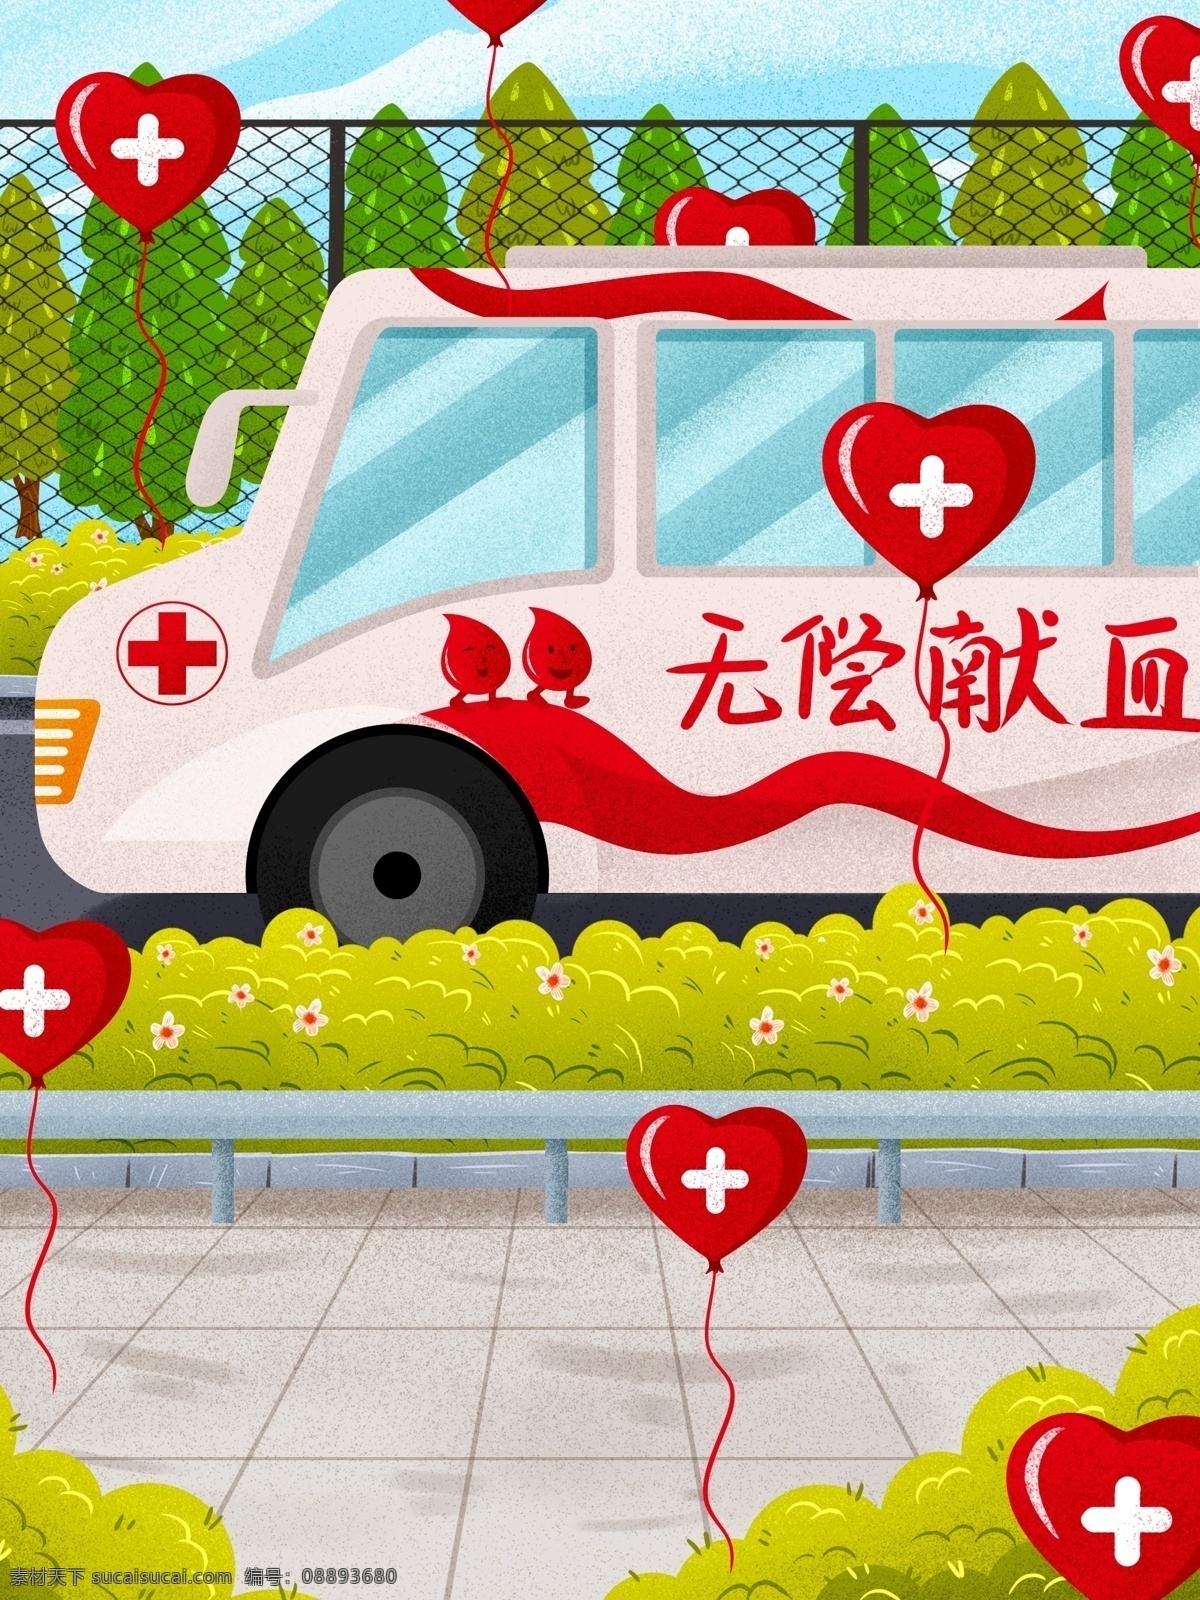 手绘 爱心 红十字 献血 车 背景 无偿献血 献血车 气球 广告背景 手绘背景 促销背景 背景展板图 背景图